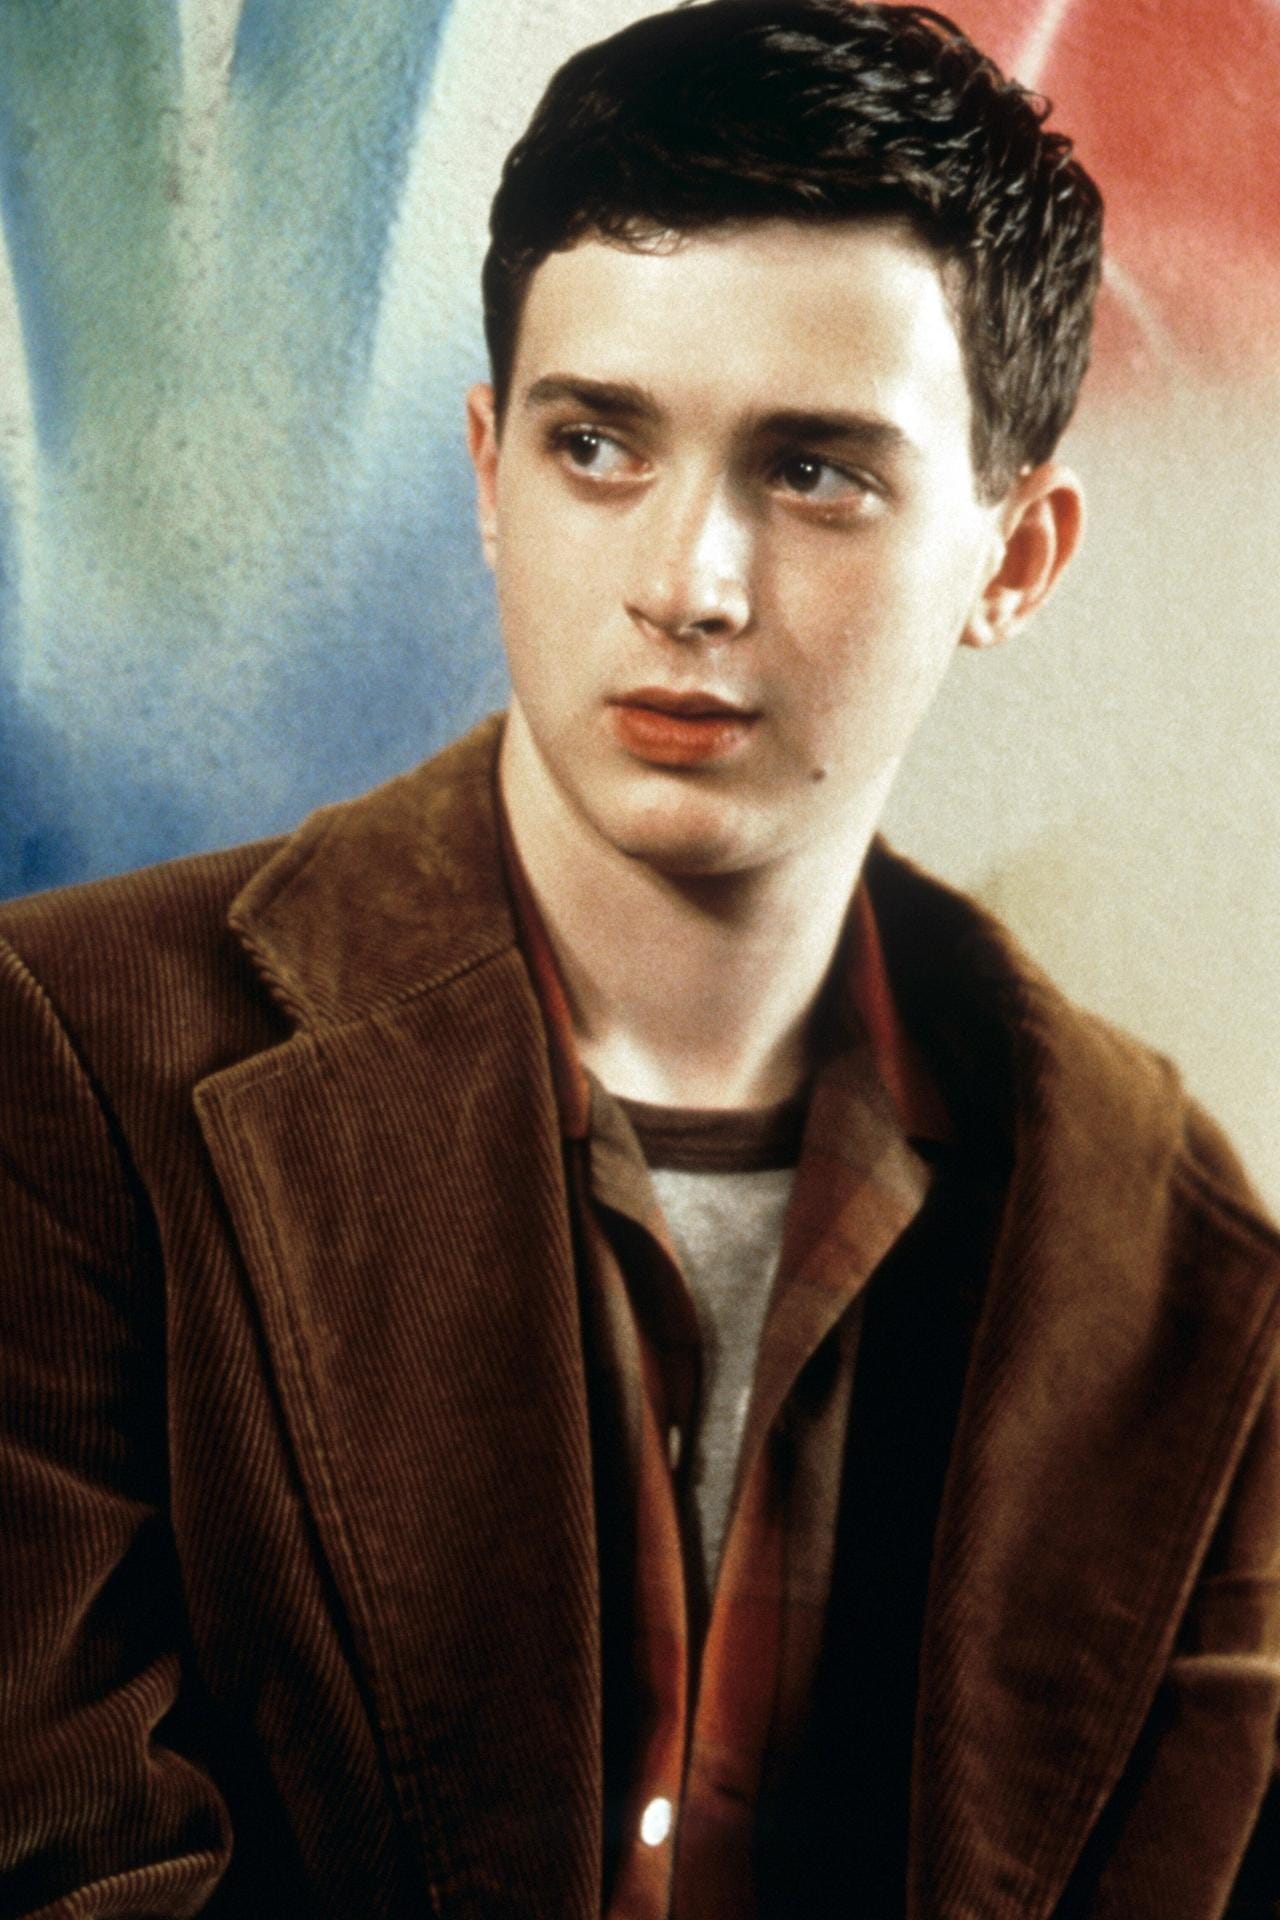 Eddie Kaye Thomas spielte Finch, der von seinen Freunden in "American Pie" auch gerne mal "Heimscheißer" genannt wurde.